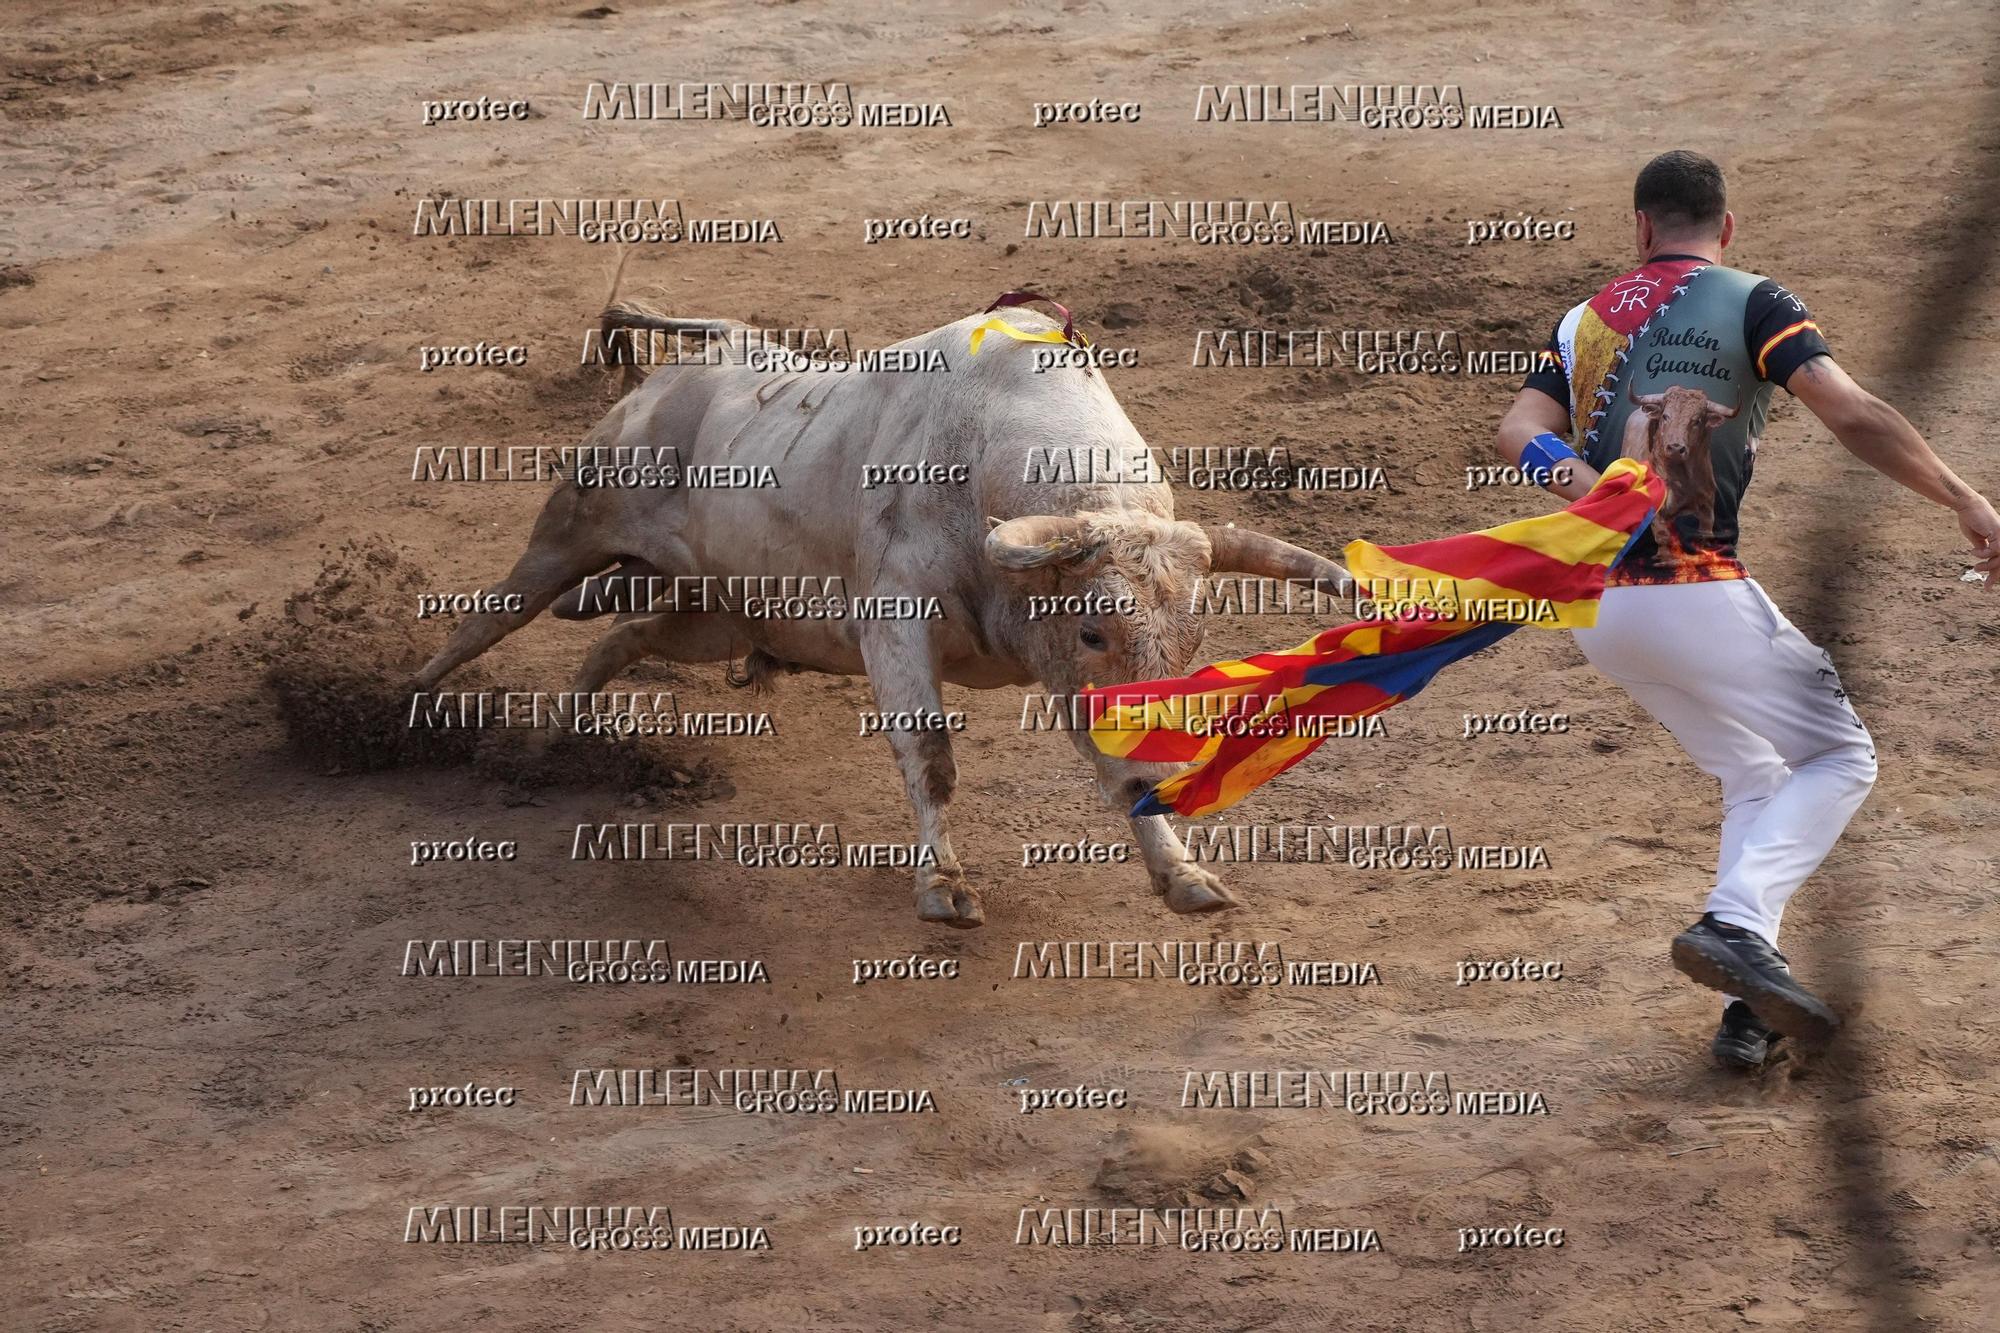 Galería de fotos de la última tarde de toros de la Fira en Onda